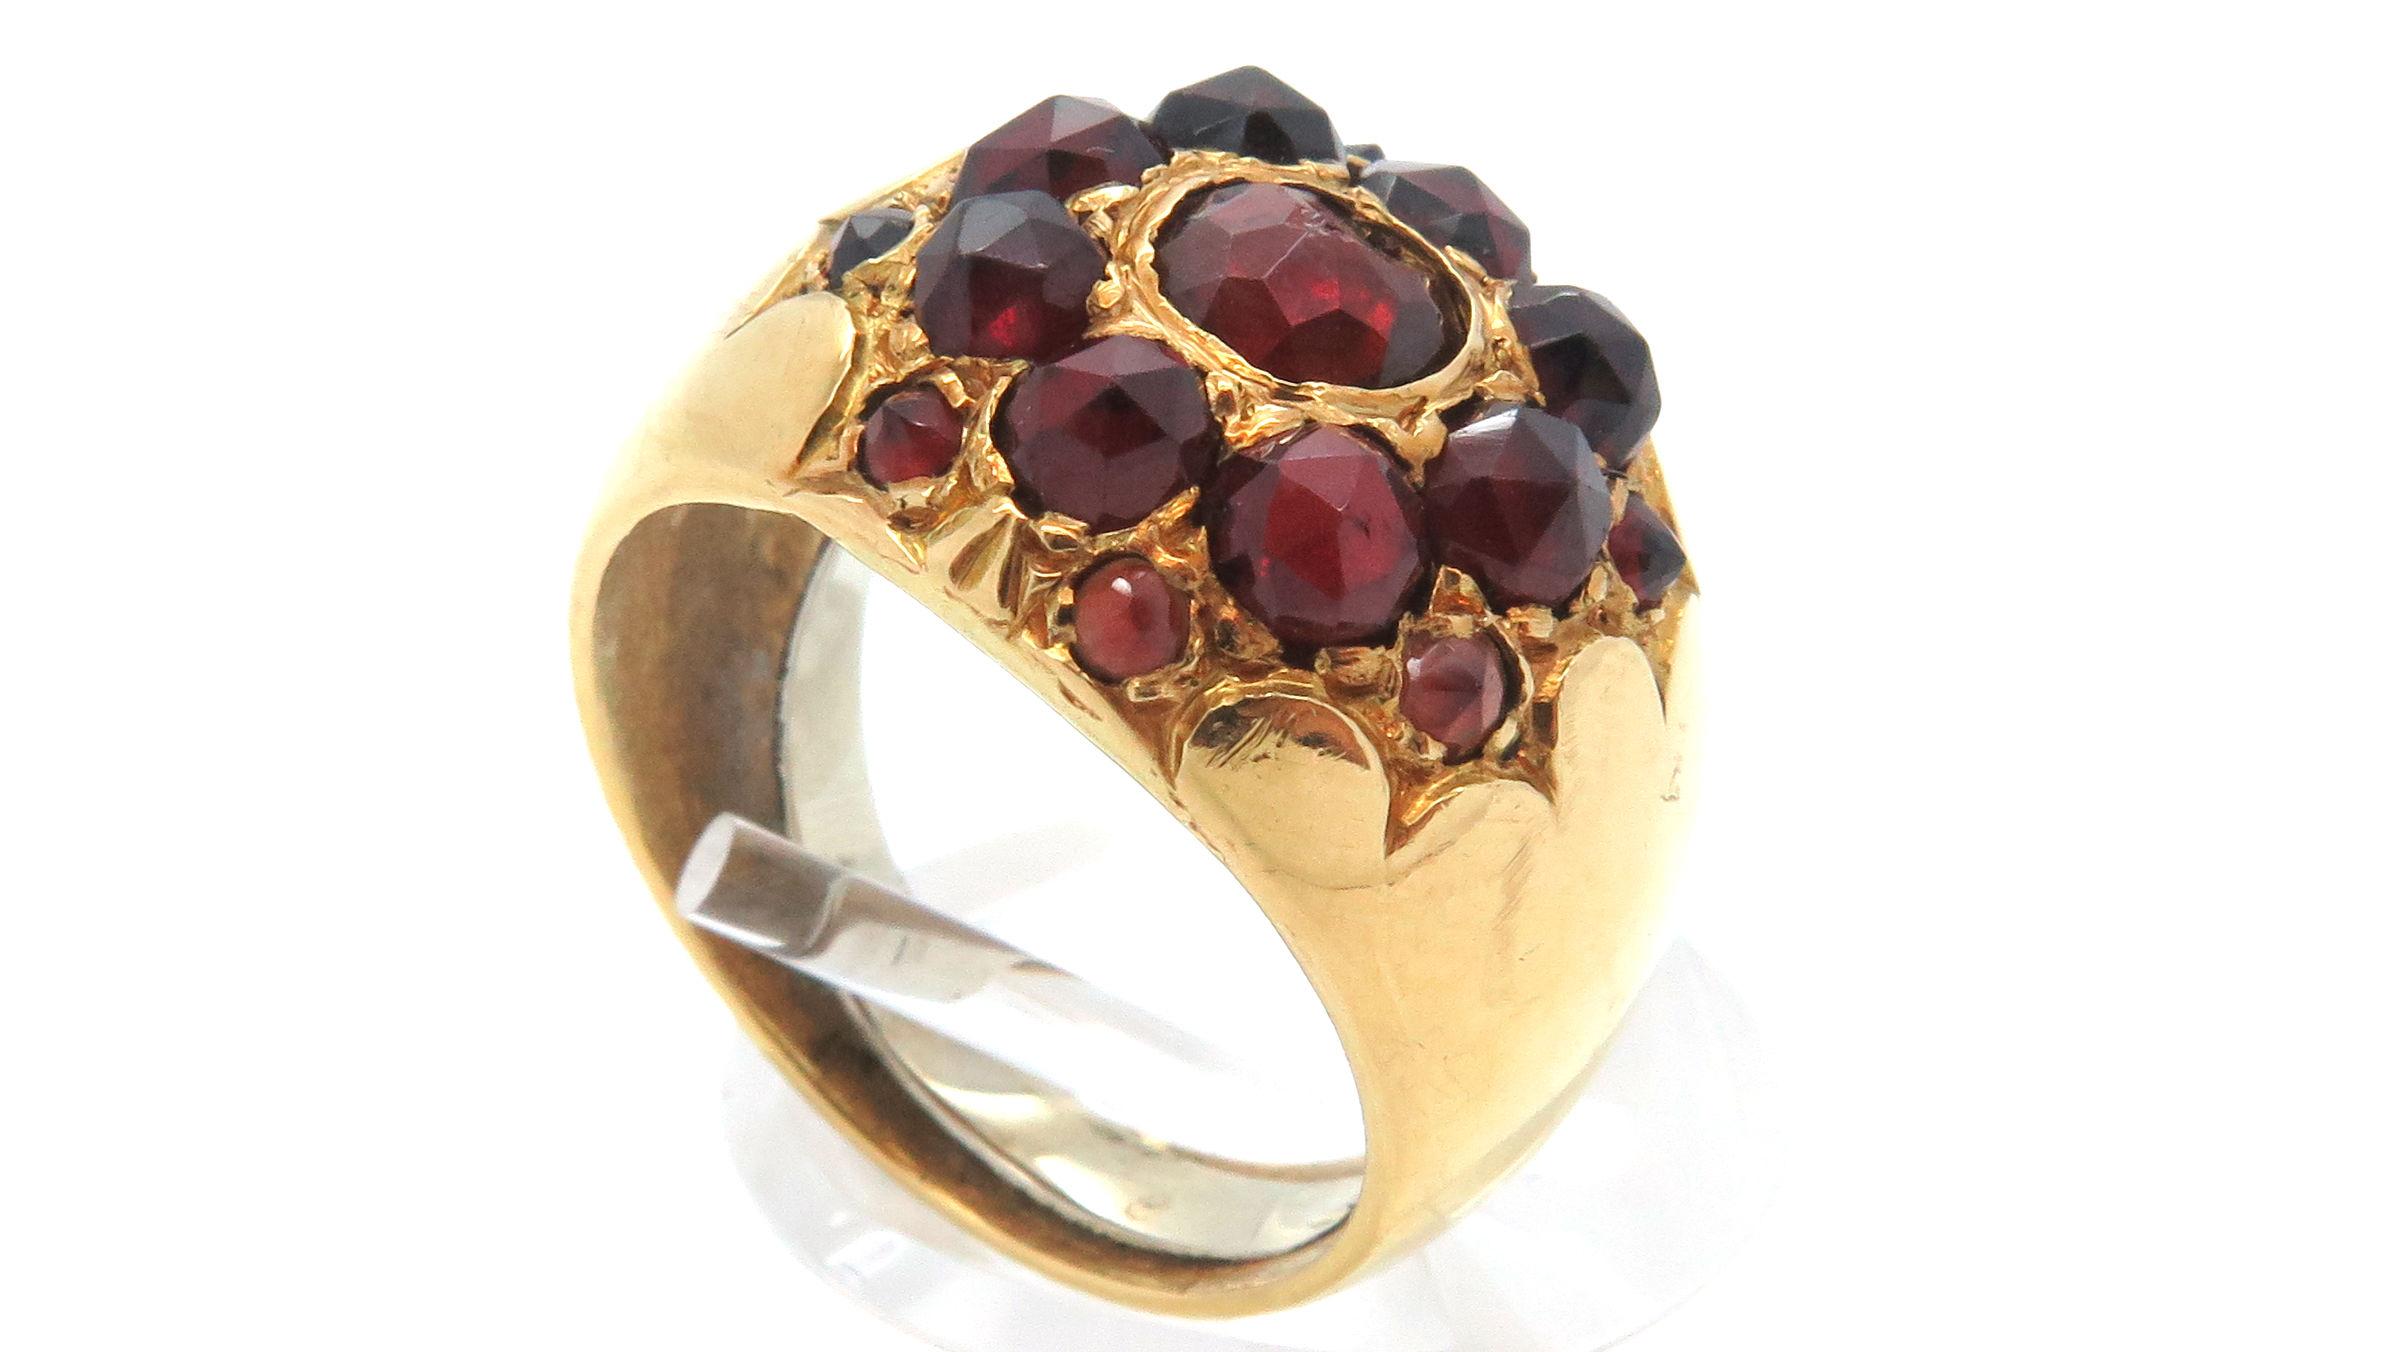 Un anello d'oro con gemme rosse.